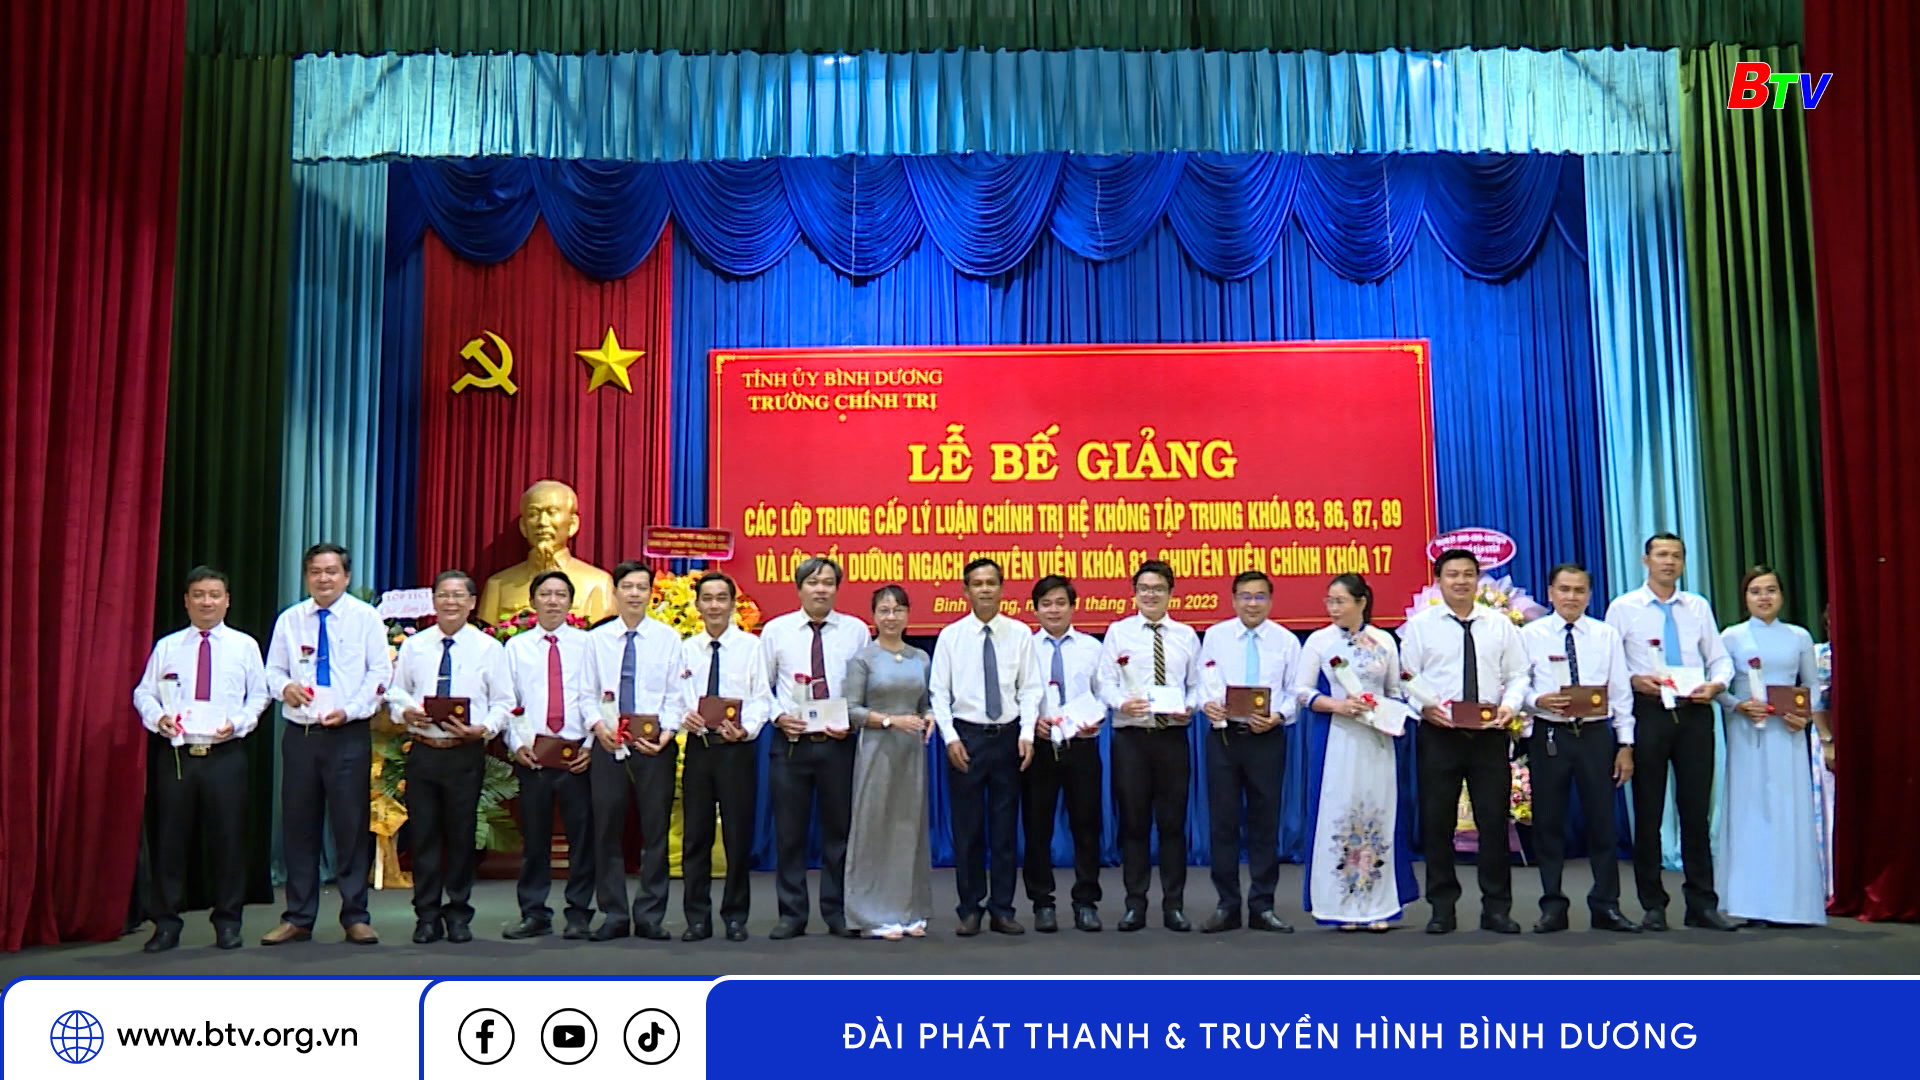 Trường Chính trị tổ chức Lễ bế giảng các lớp Trung cấp Chính trị